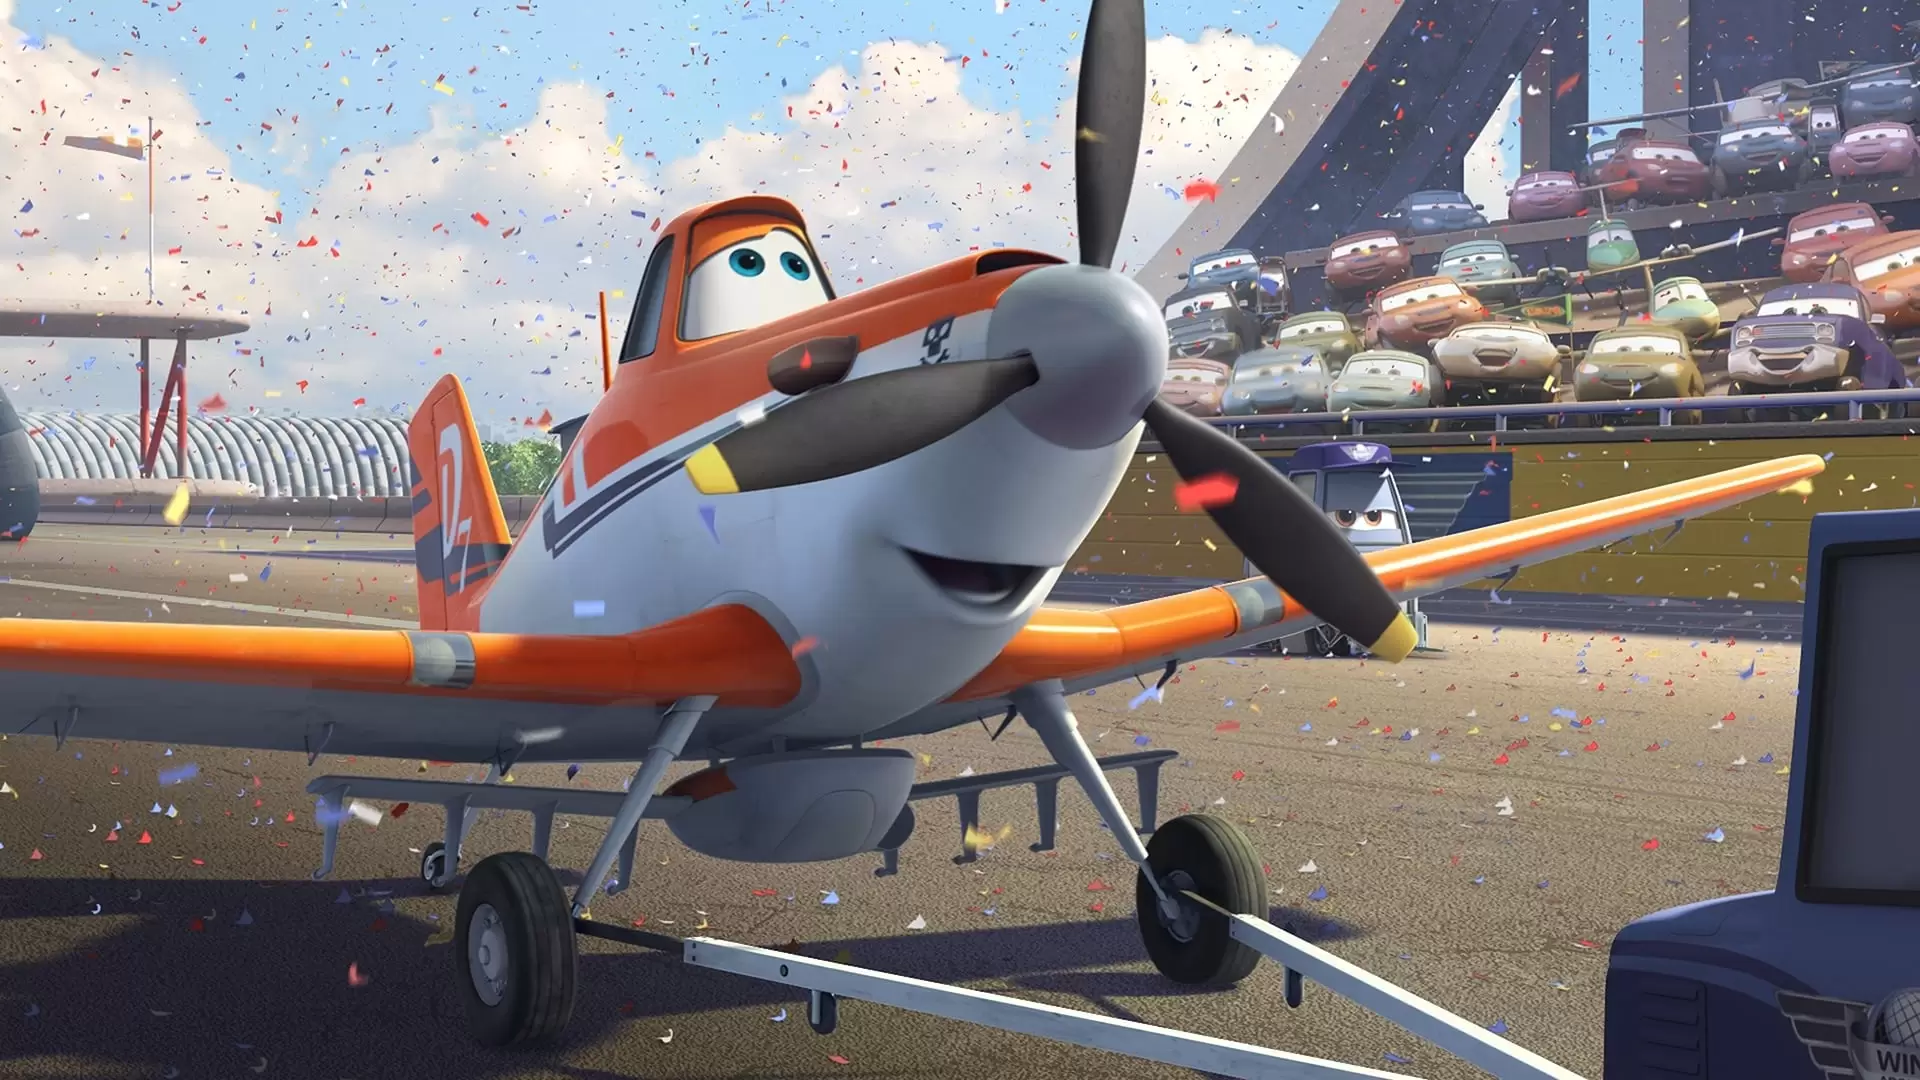 دانلود انیمیشن Planes 2013